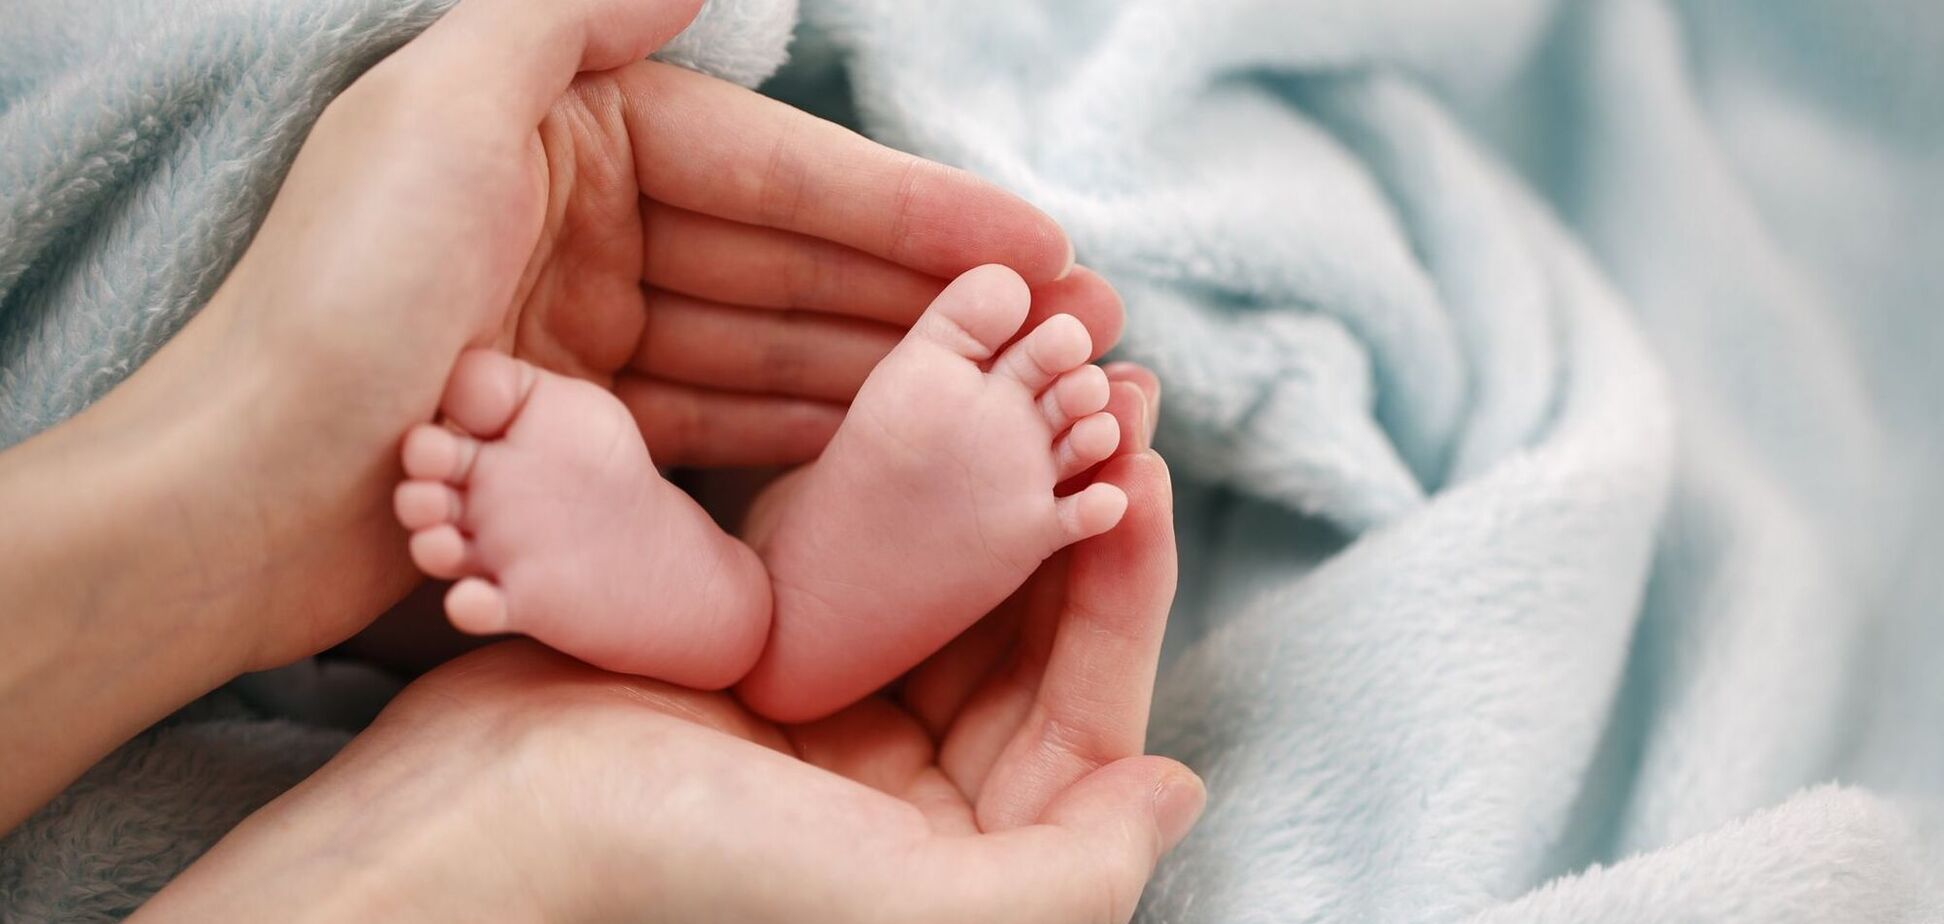 COVID-19 может вызывать аутизм у новорожденных, особенно у мальчиков